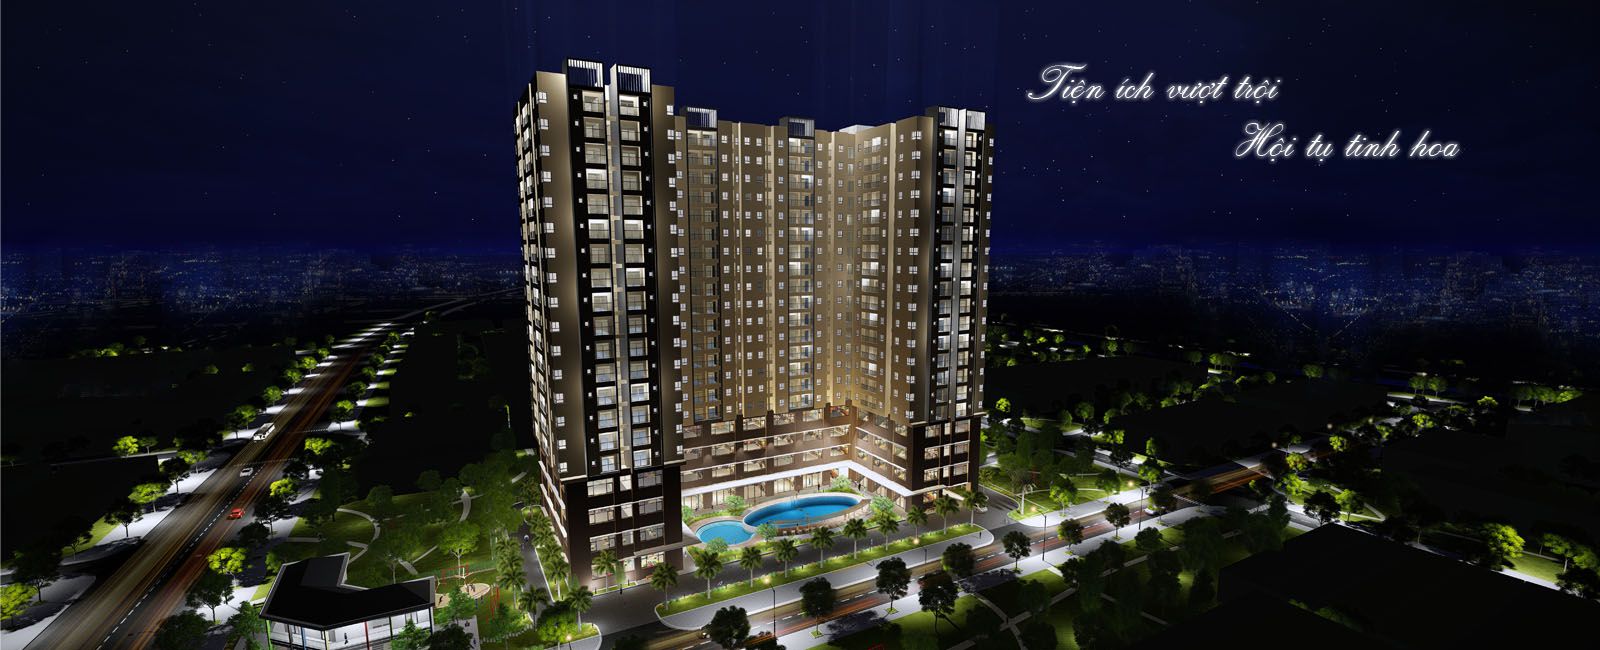 Dự án căn hộ chung cư Kingsway Tower, Bình Hưng Hòa, quận Bình Tân